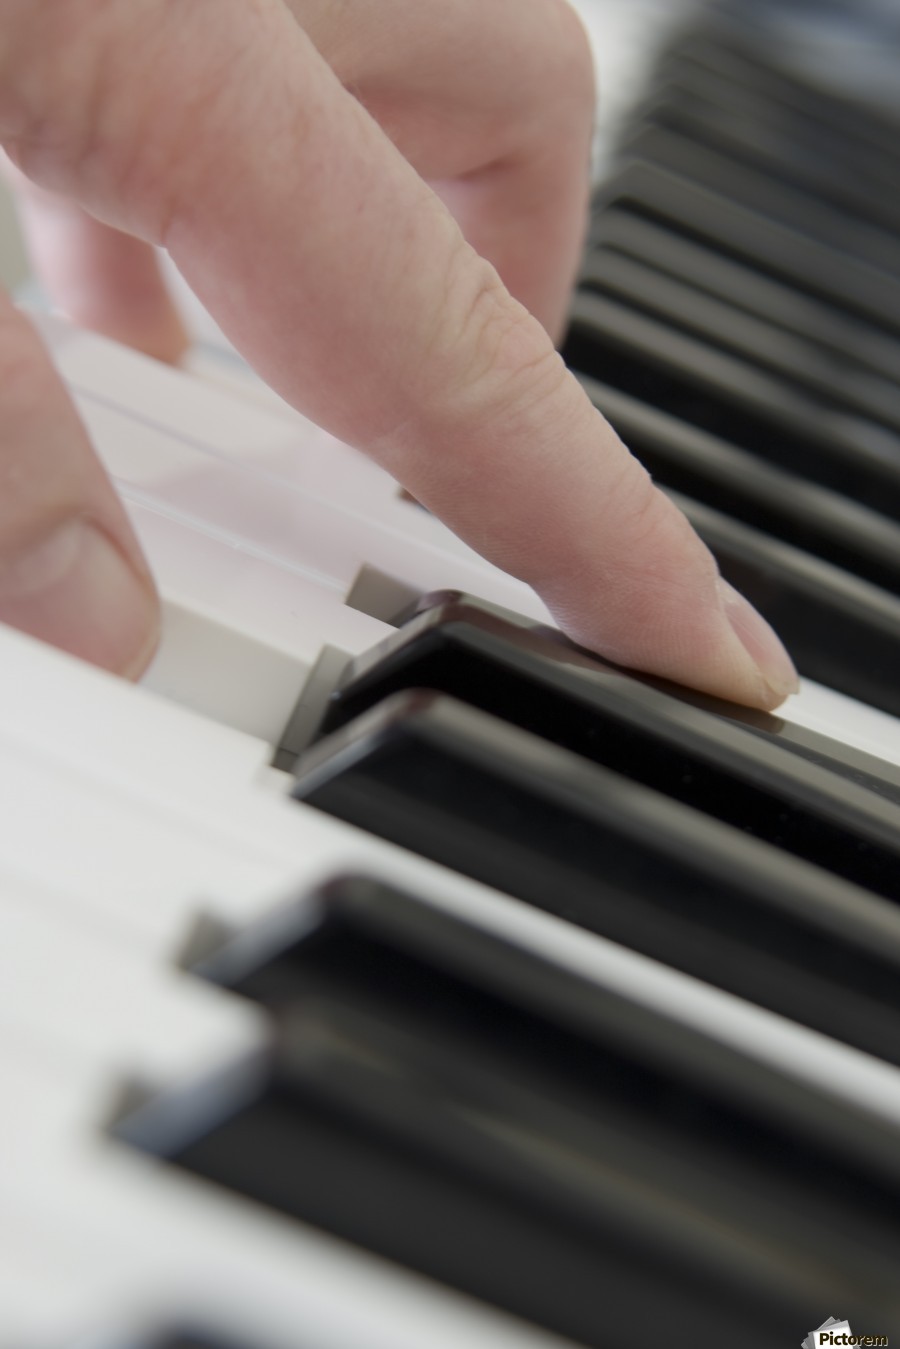 Clavier de piano à imprimer –